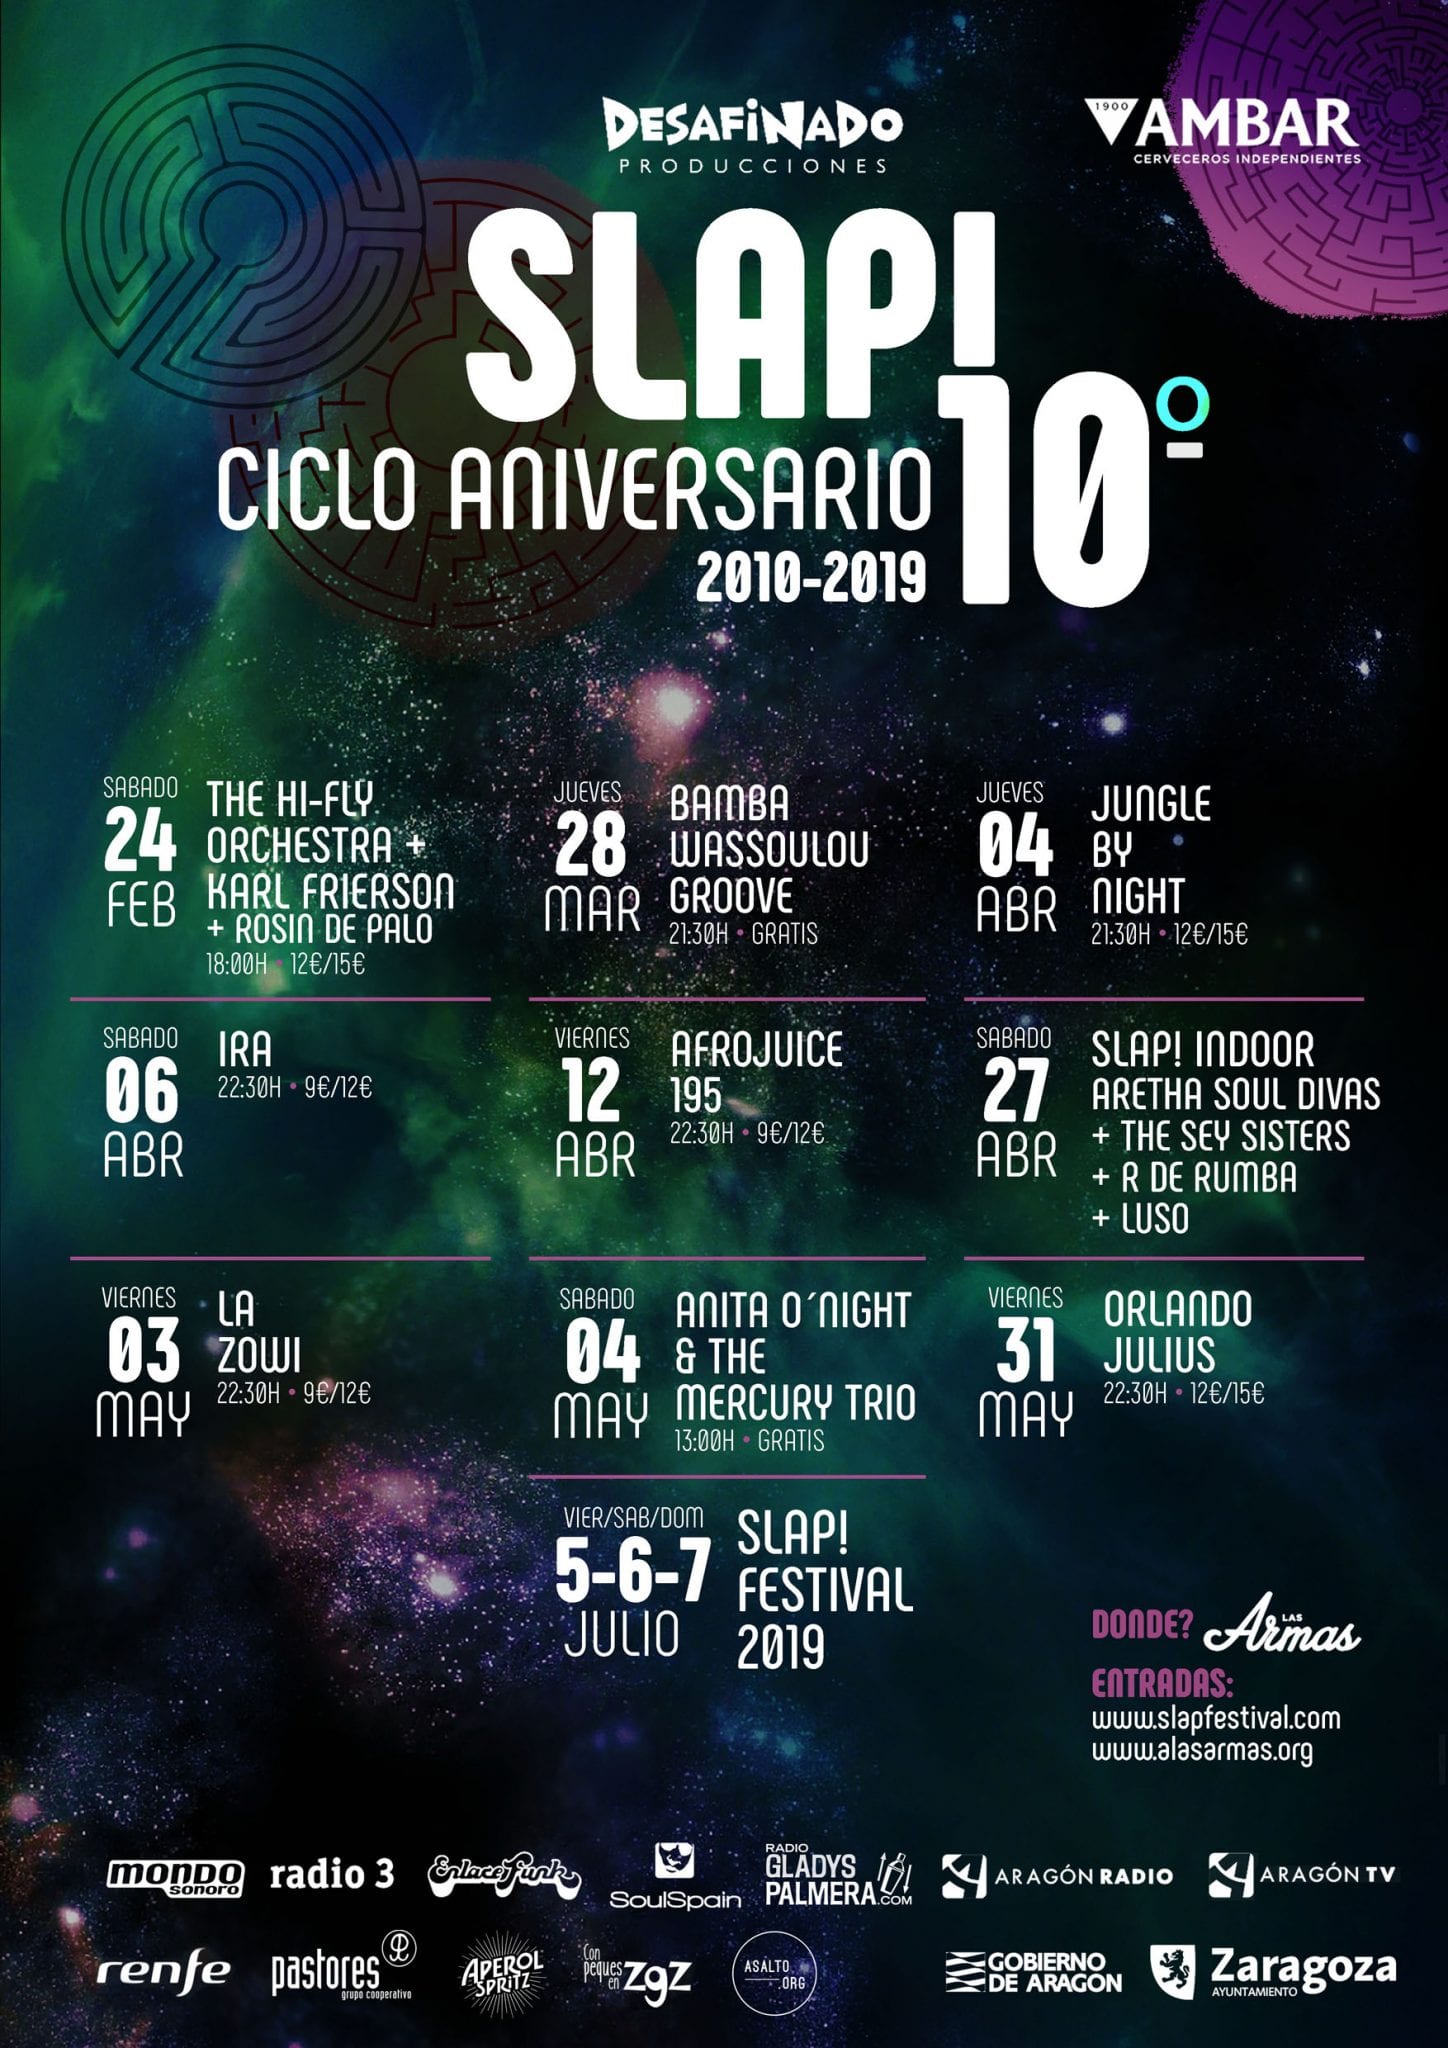 El Slap! Festival celebra su décimo aniversario